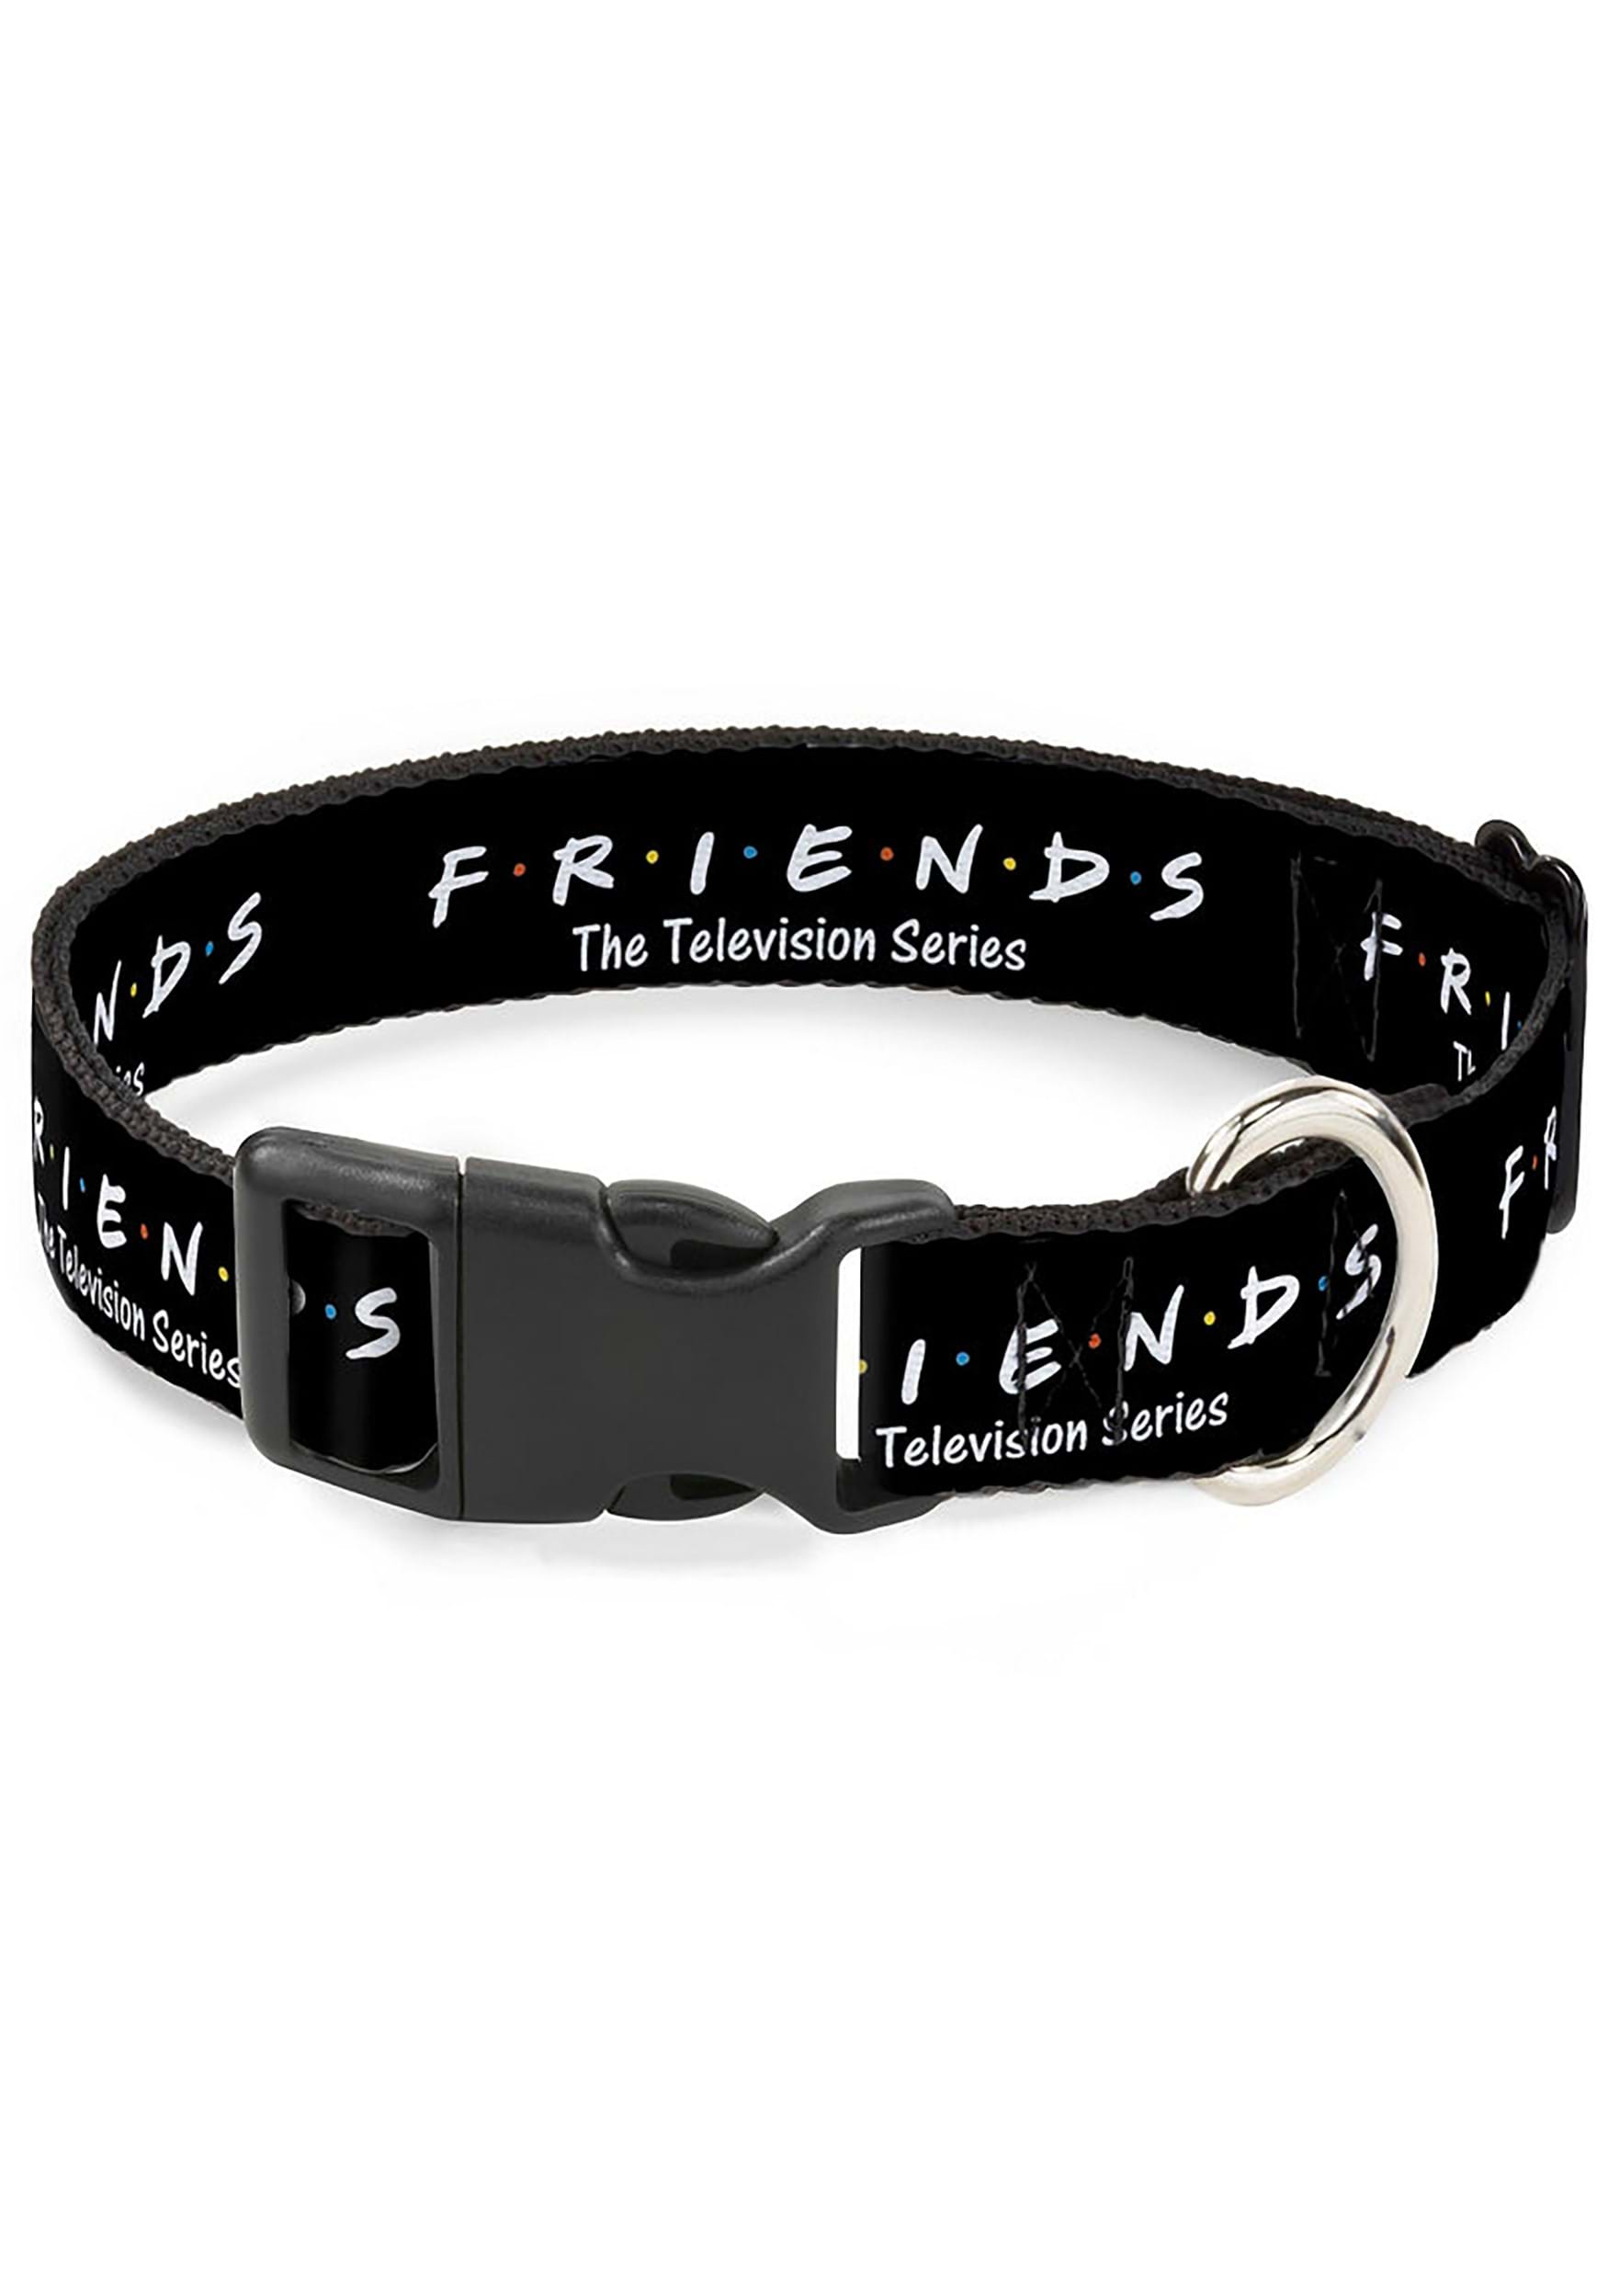 Friends The TV Series Pet Collar